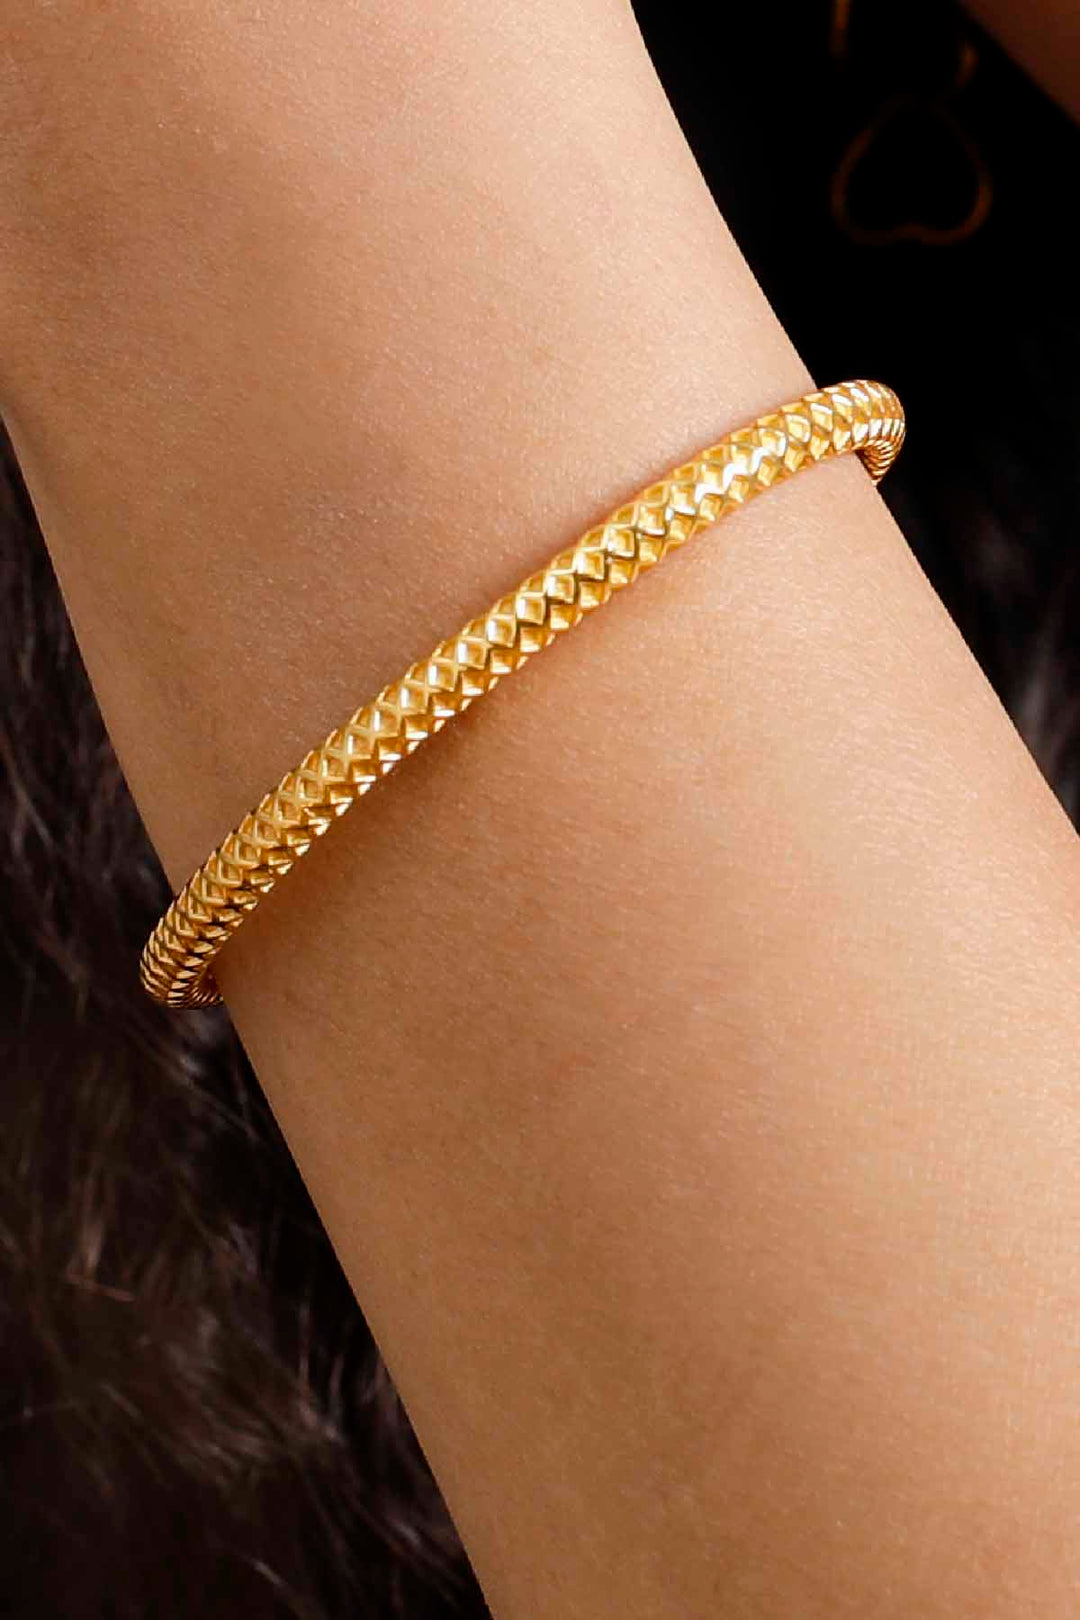 The Elysian Gold Bracelet